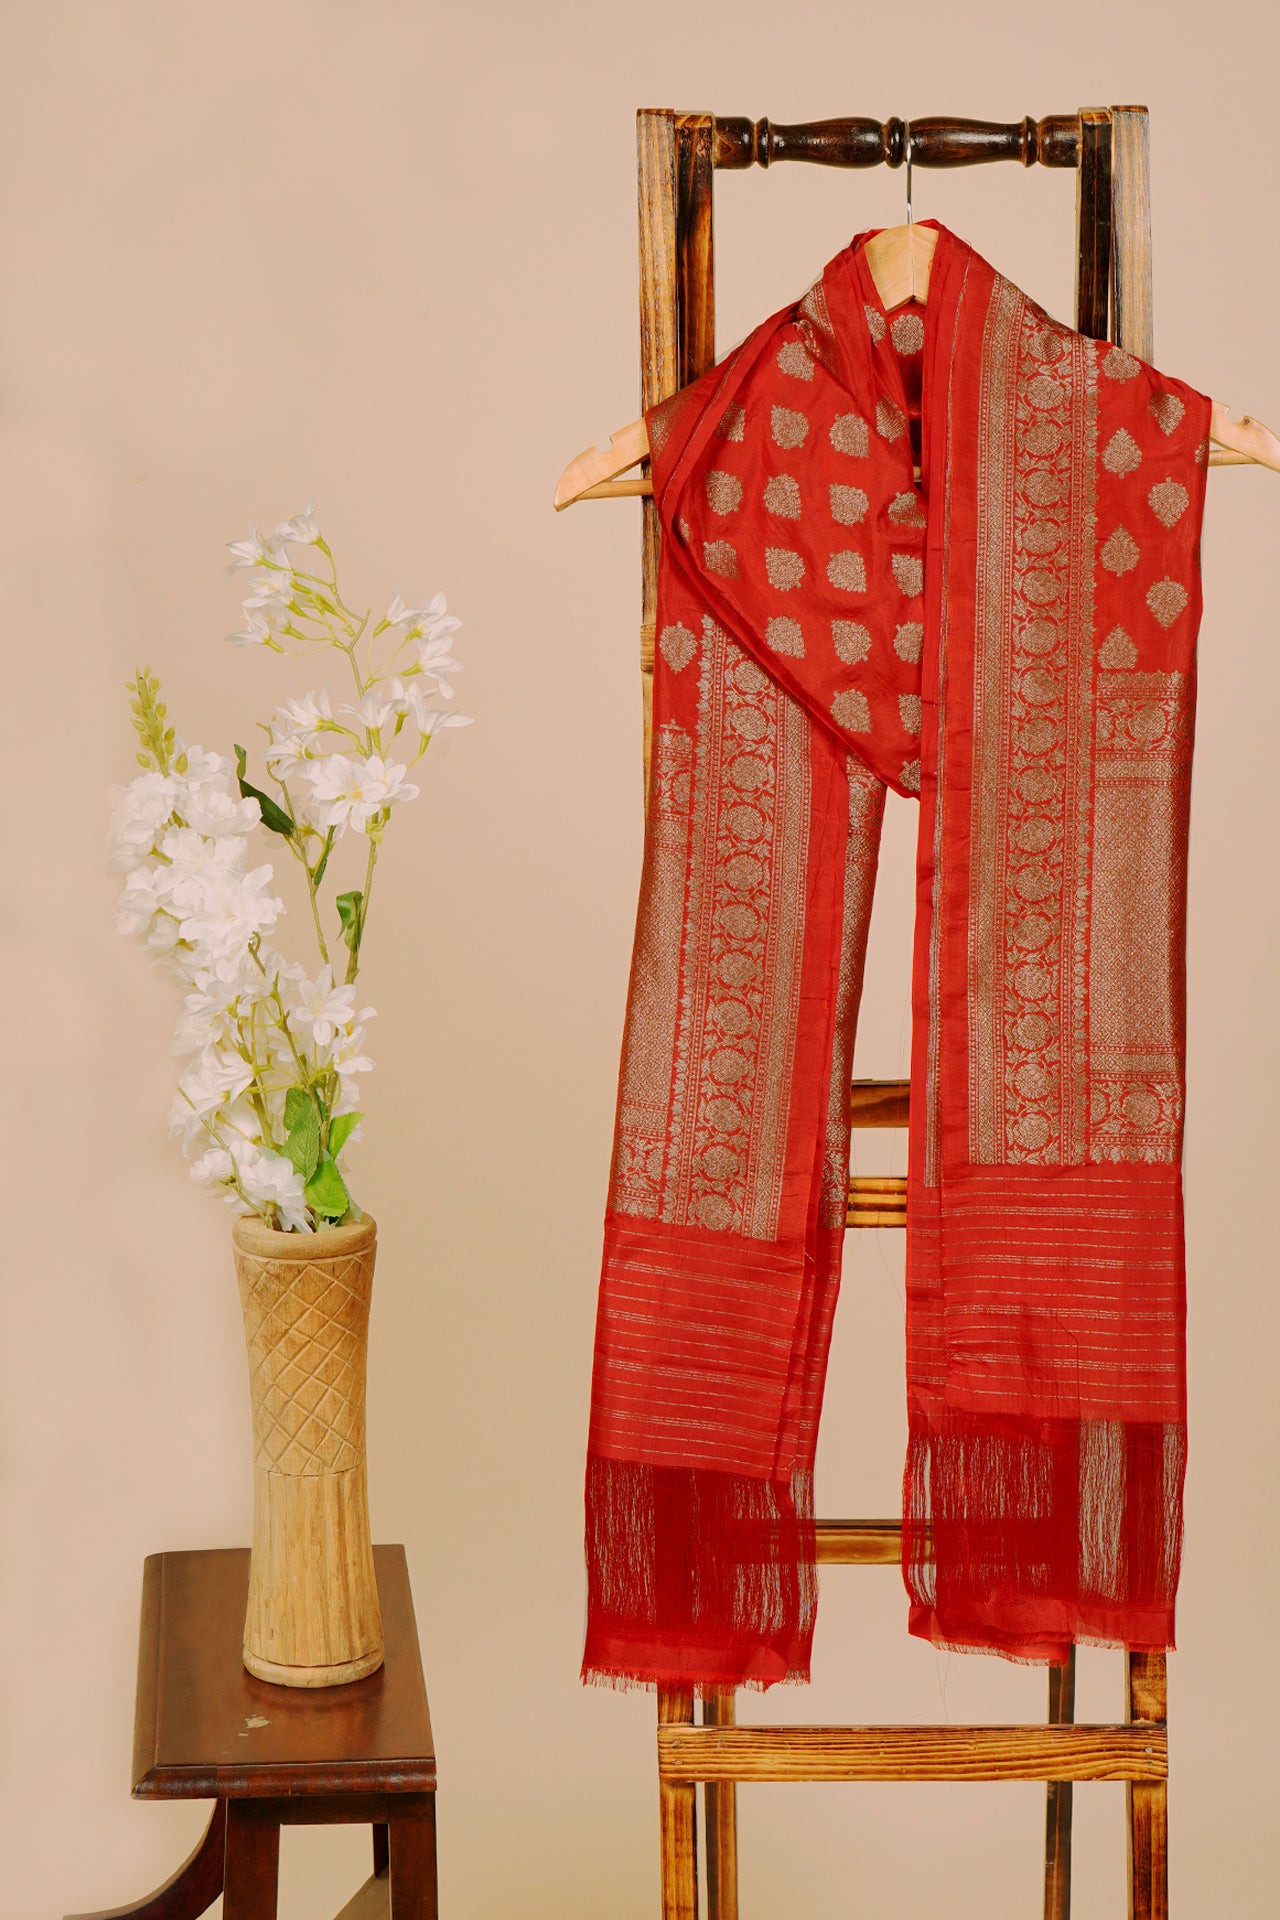 Red Color Handwoven Brocade Silk Dupatta